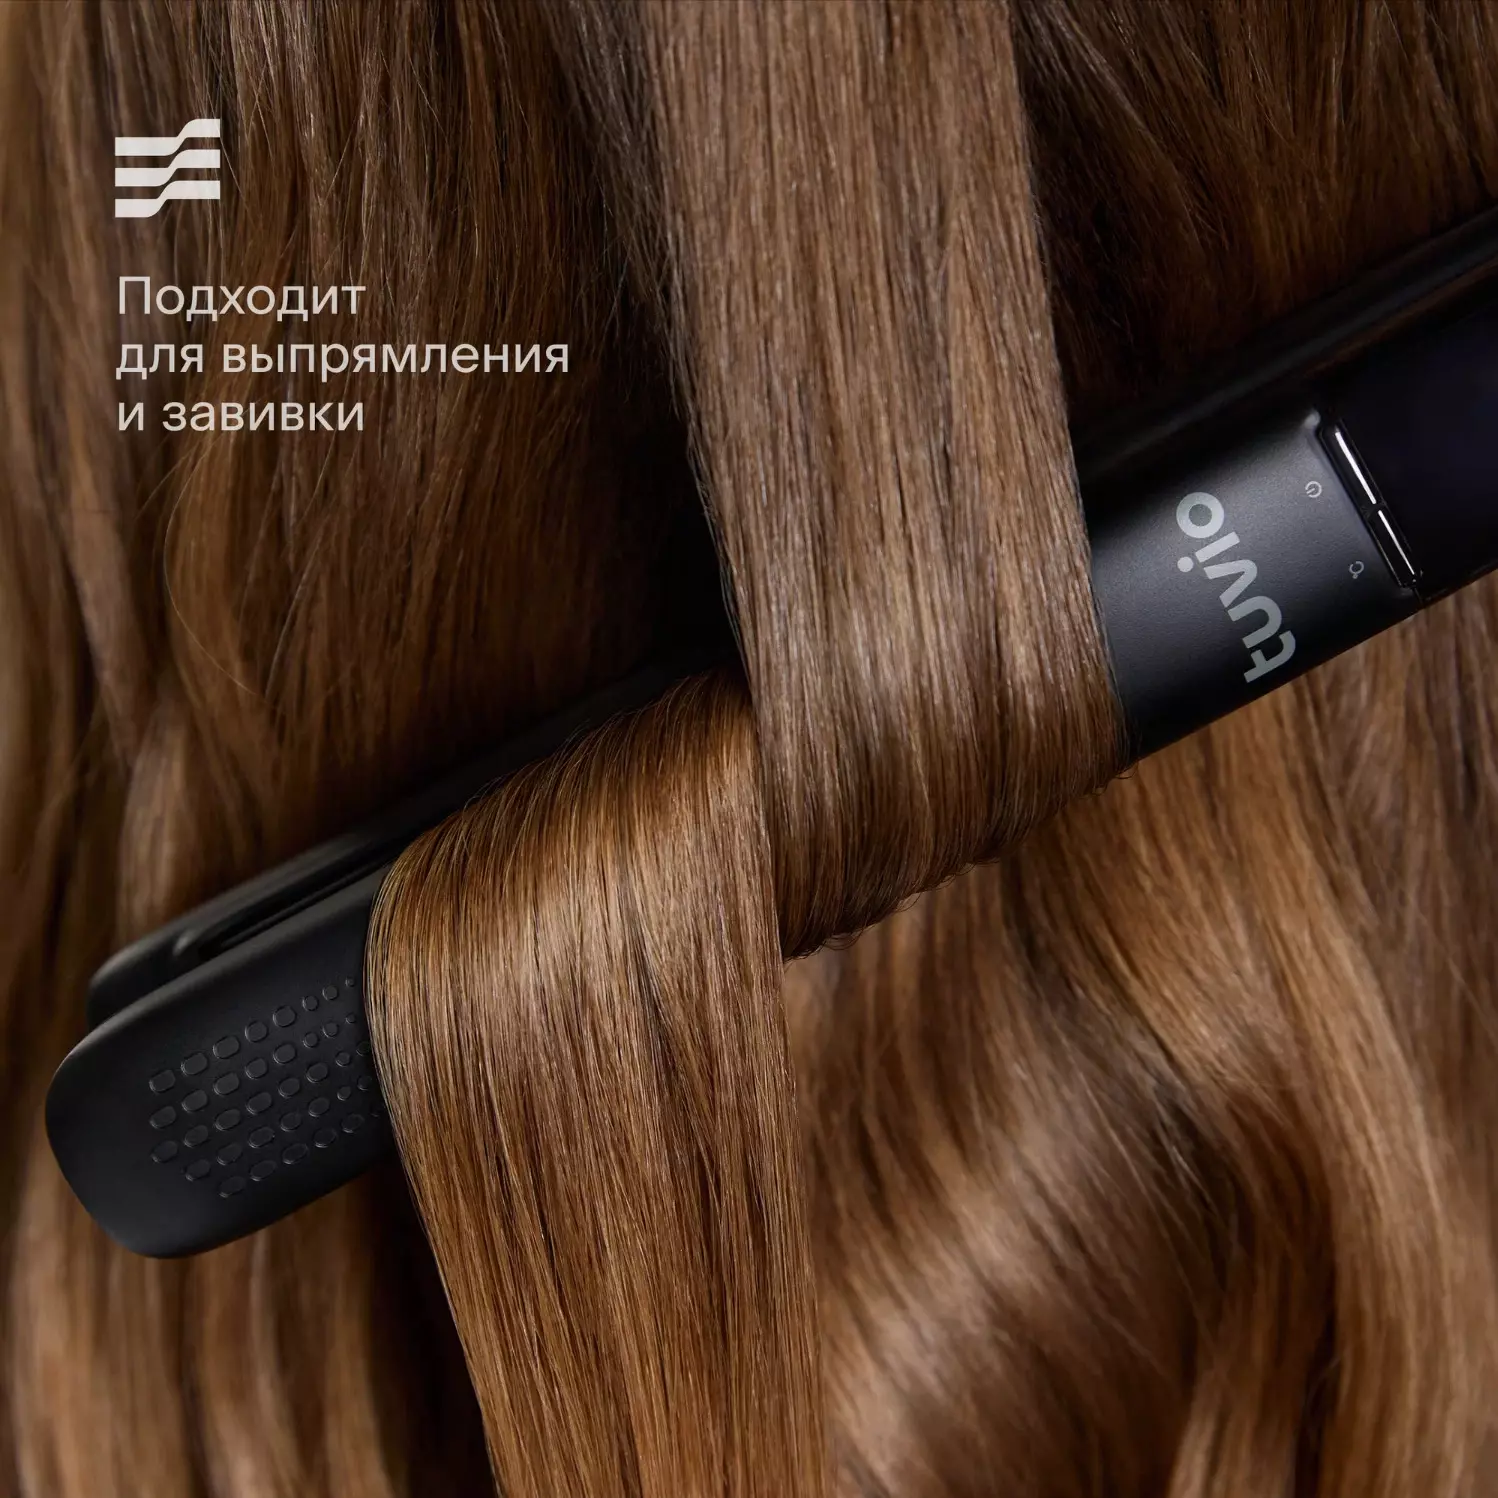 Выпрямитель для волос с дисплеем, Tuvio HS10CDI01